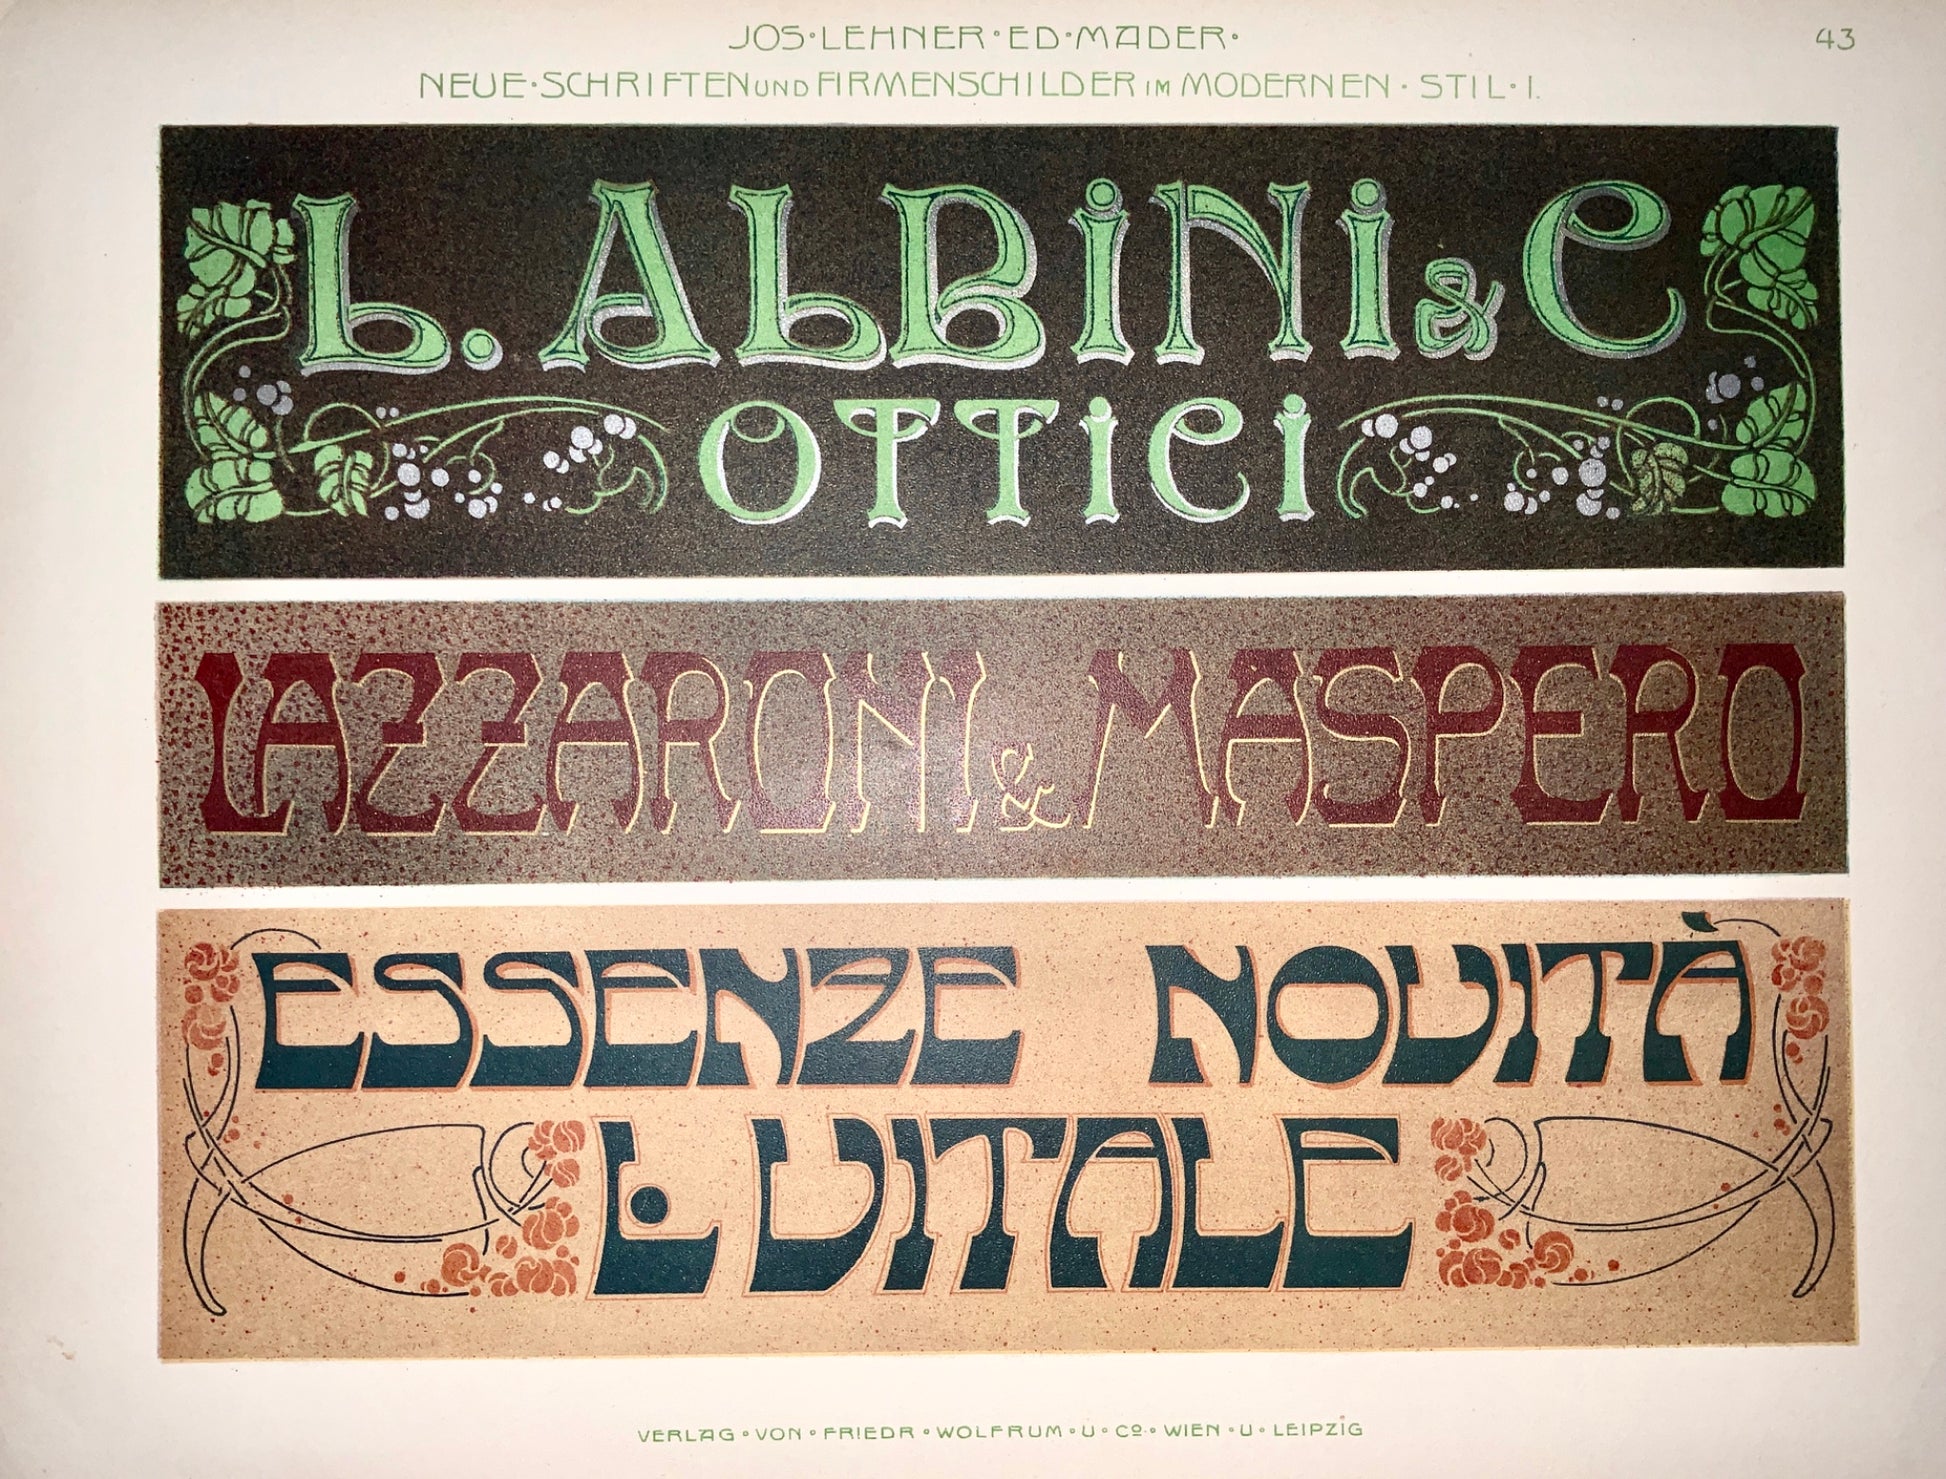 1890 JUGENDSTIL ADVERTISING Typography Italian Style - Lehner Mader 45 cm